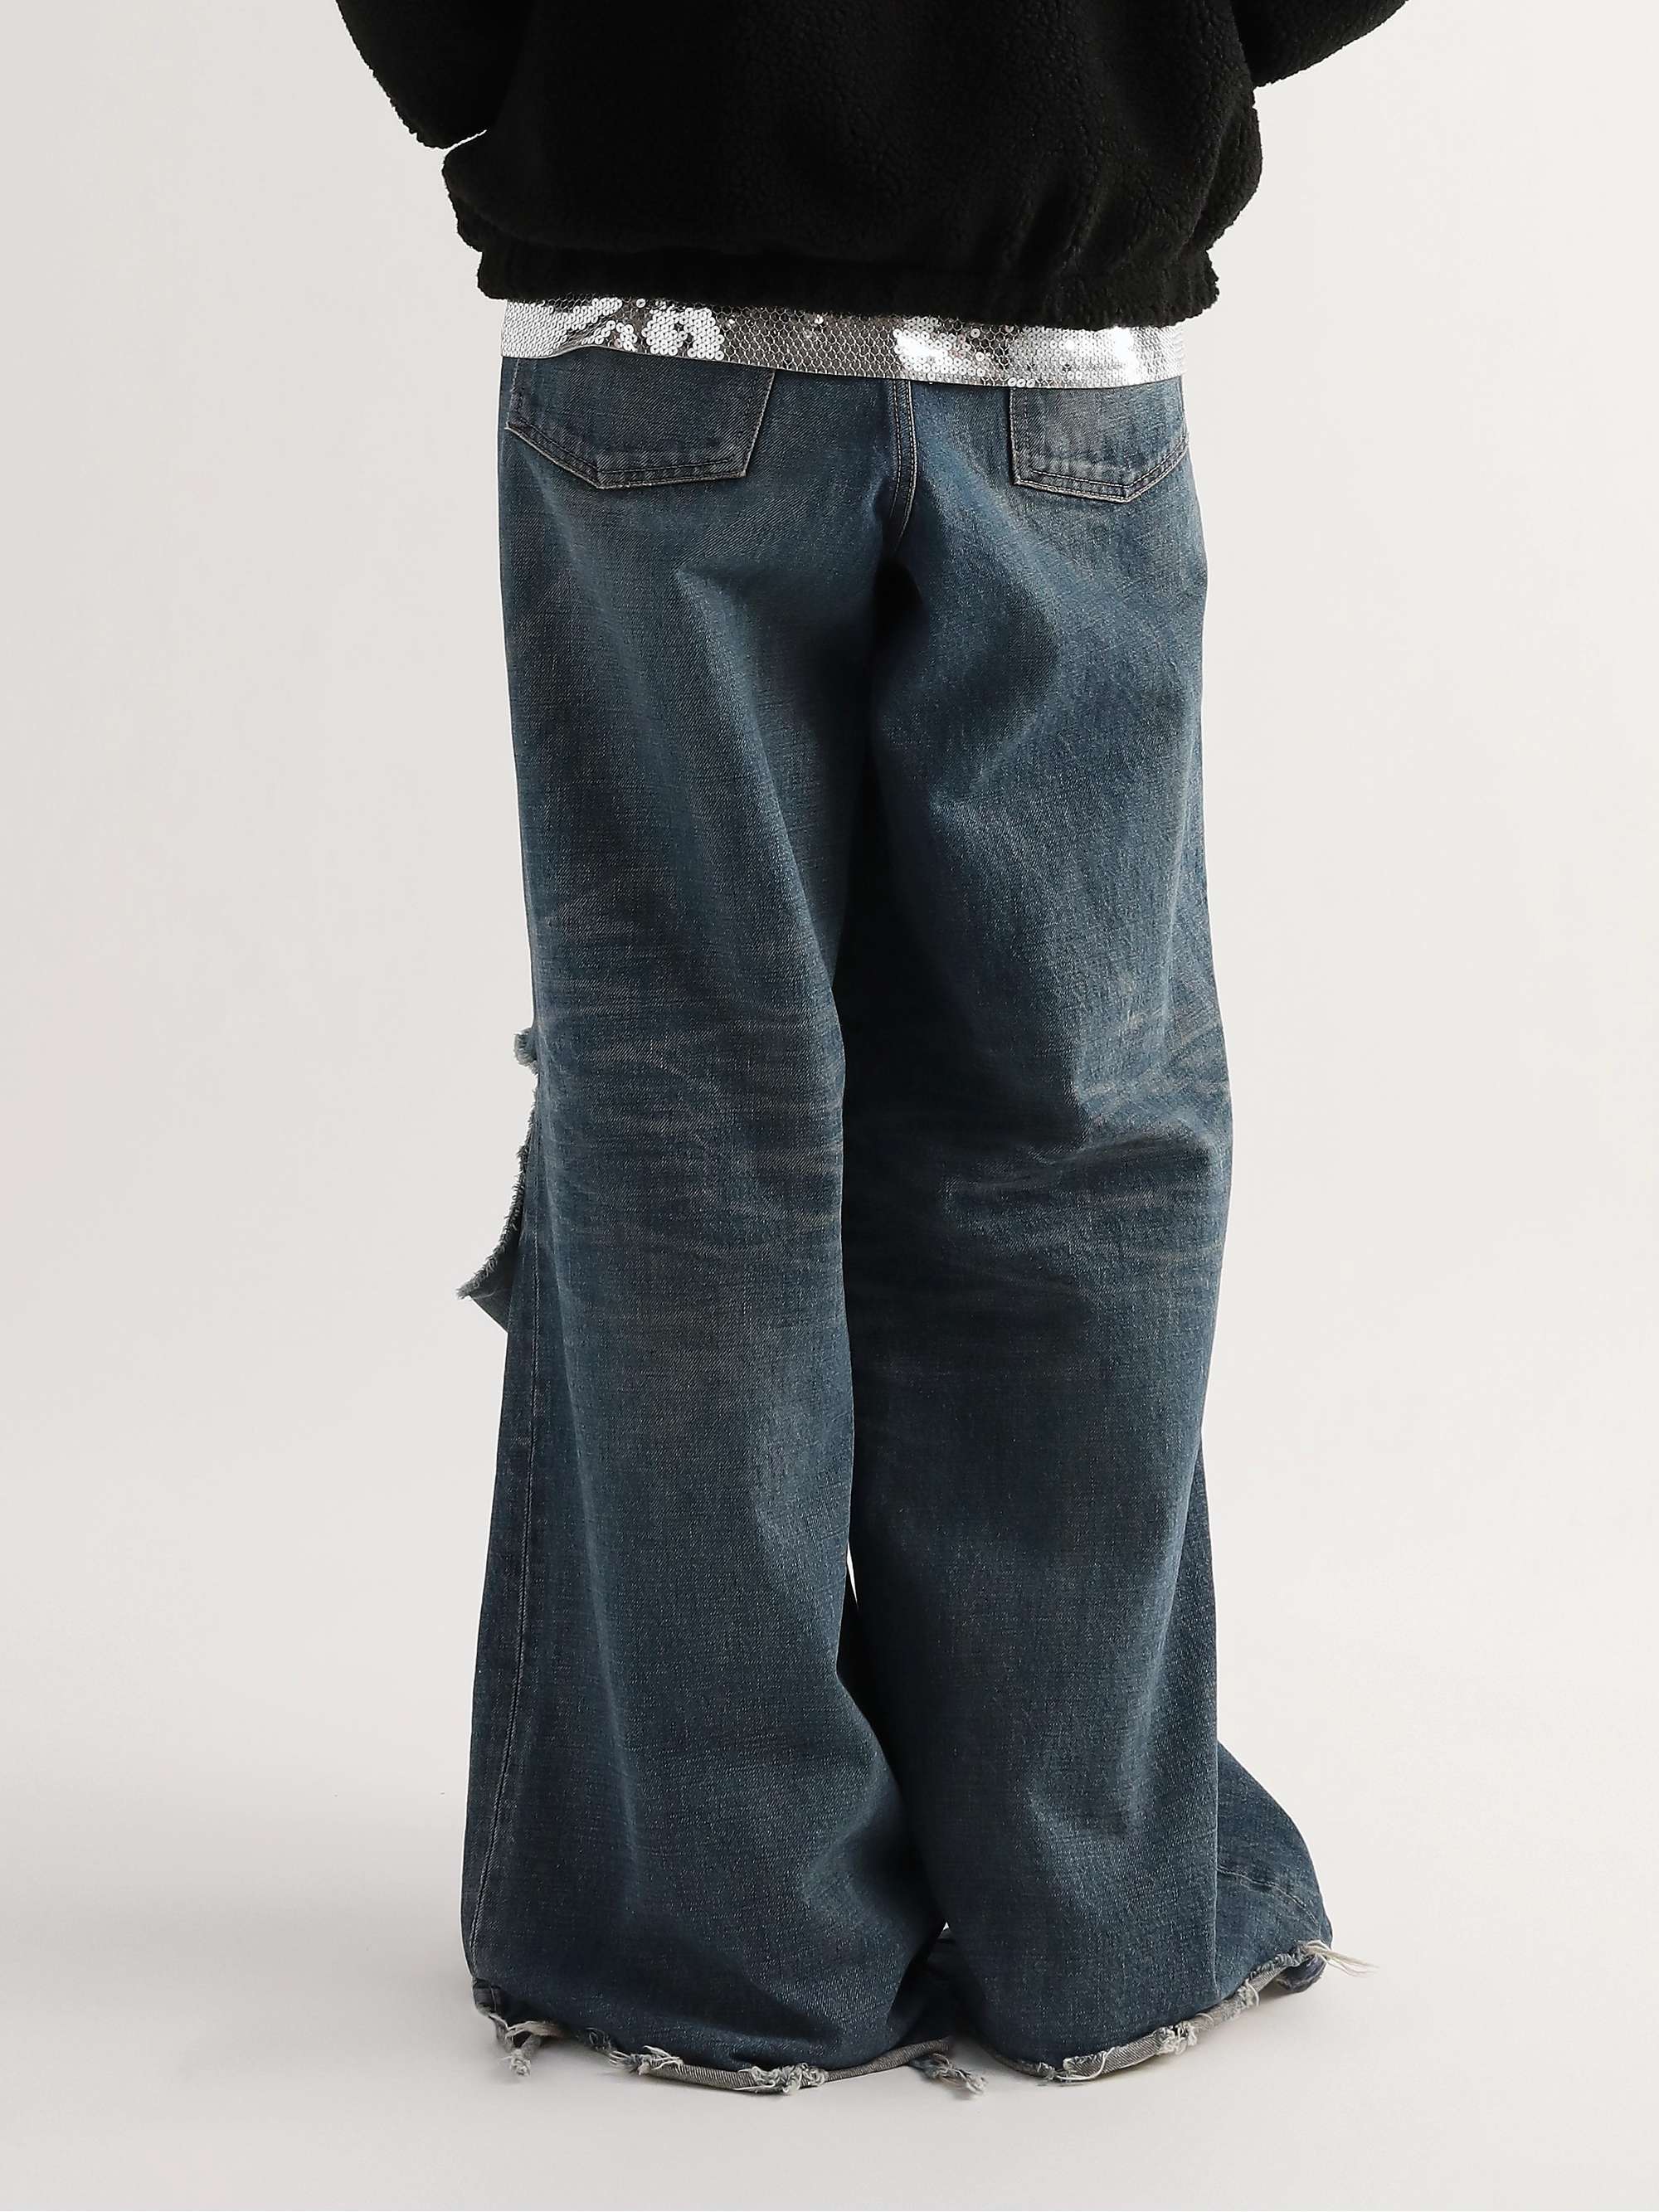 CELINE HOMME Wide-Leg Distressed Jeans for Men | MR PORTER